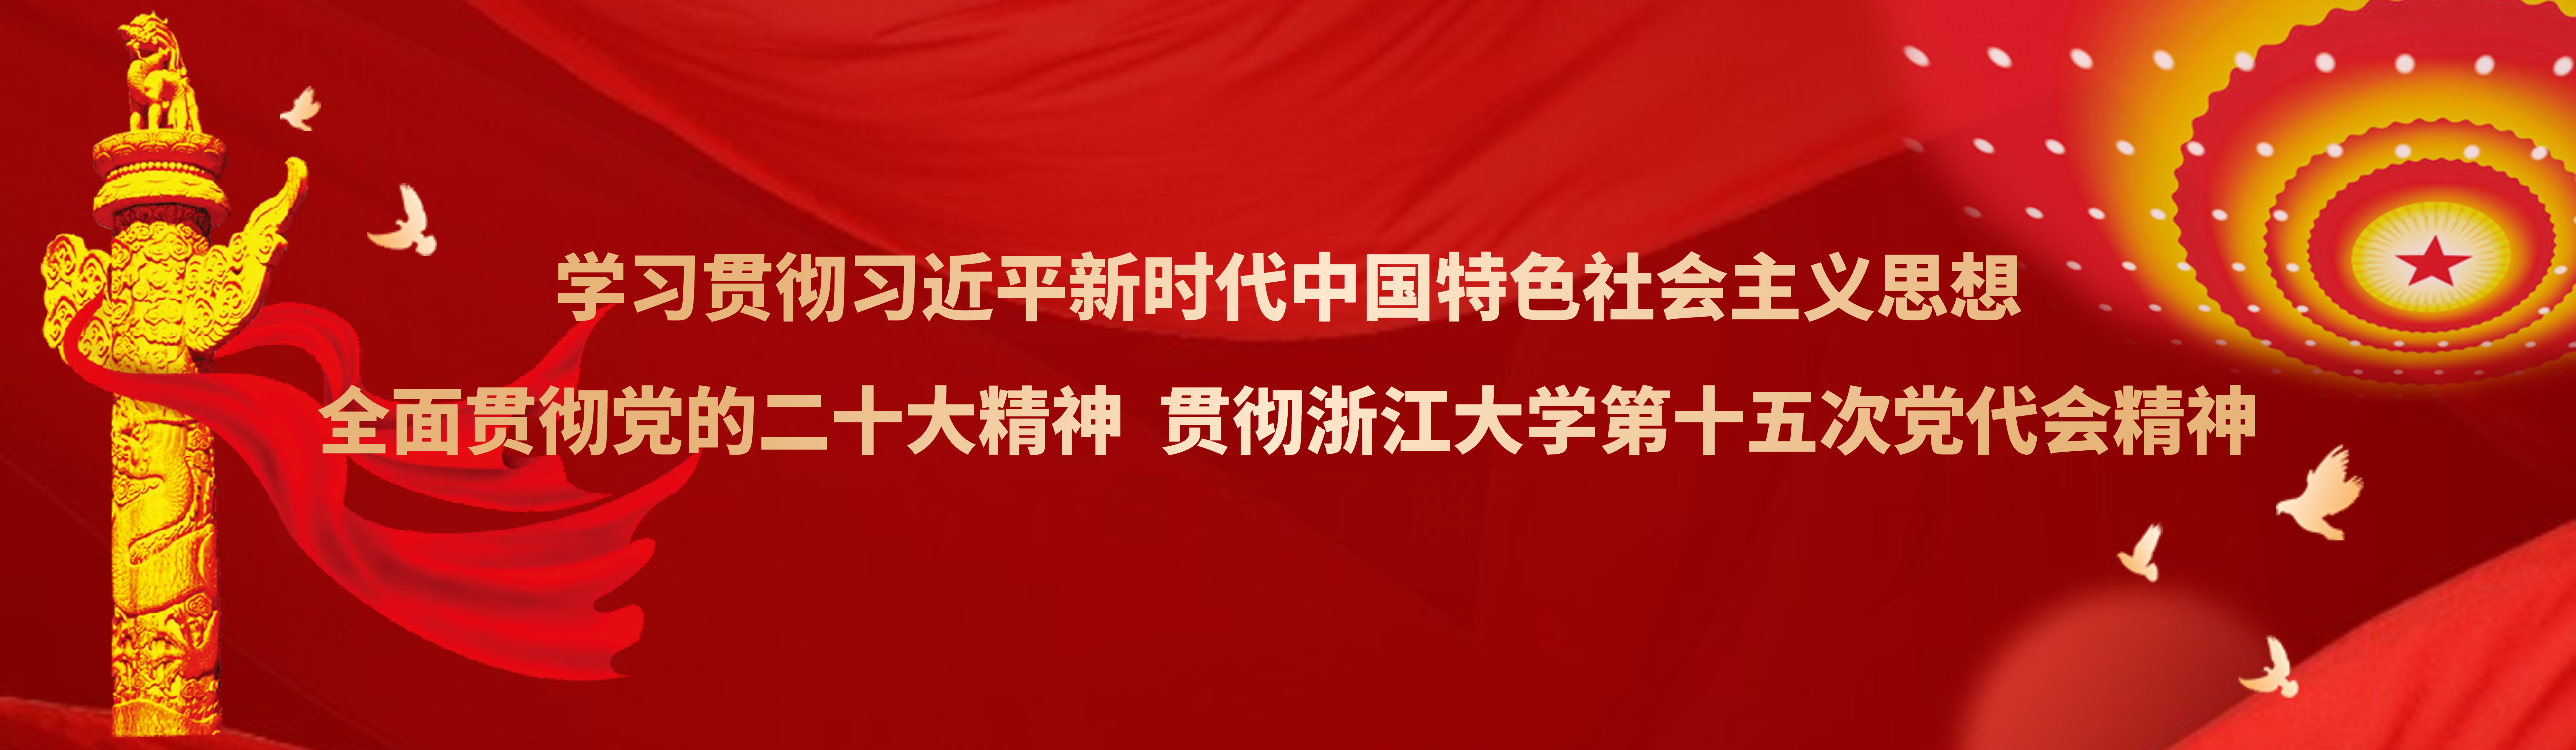 学习贯彻习近平新时代中国特色社会主义思想 热烈庆祝Betway88必威·体育第十五次党代会胜利召开